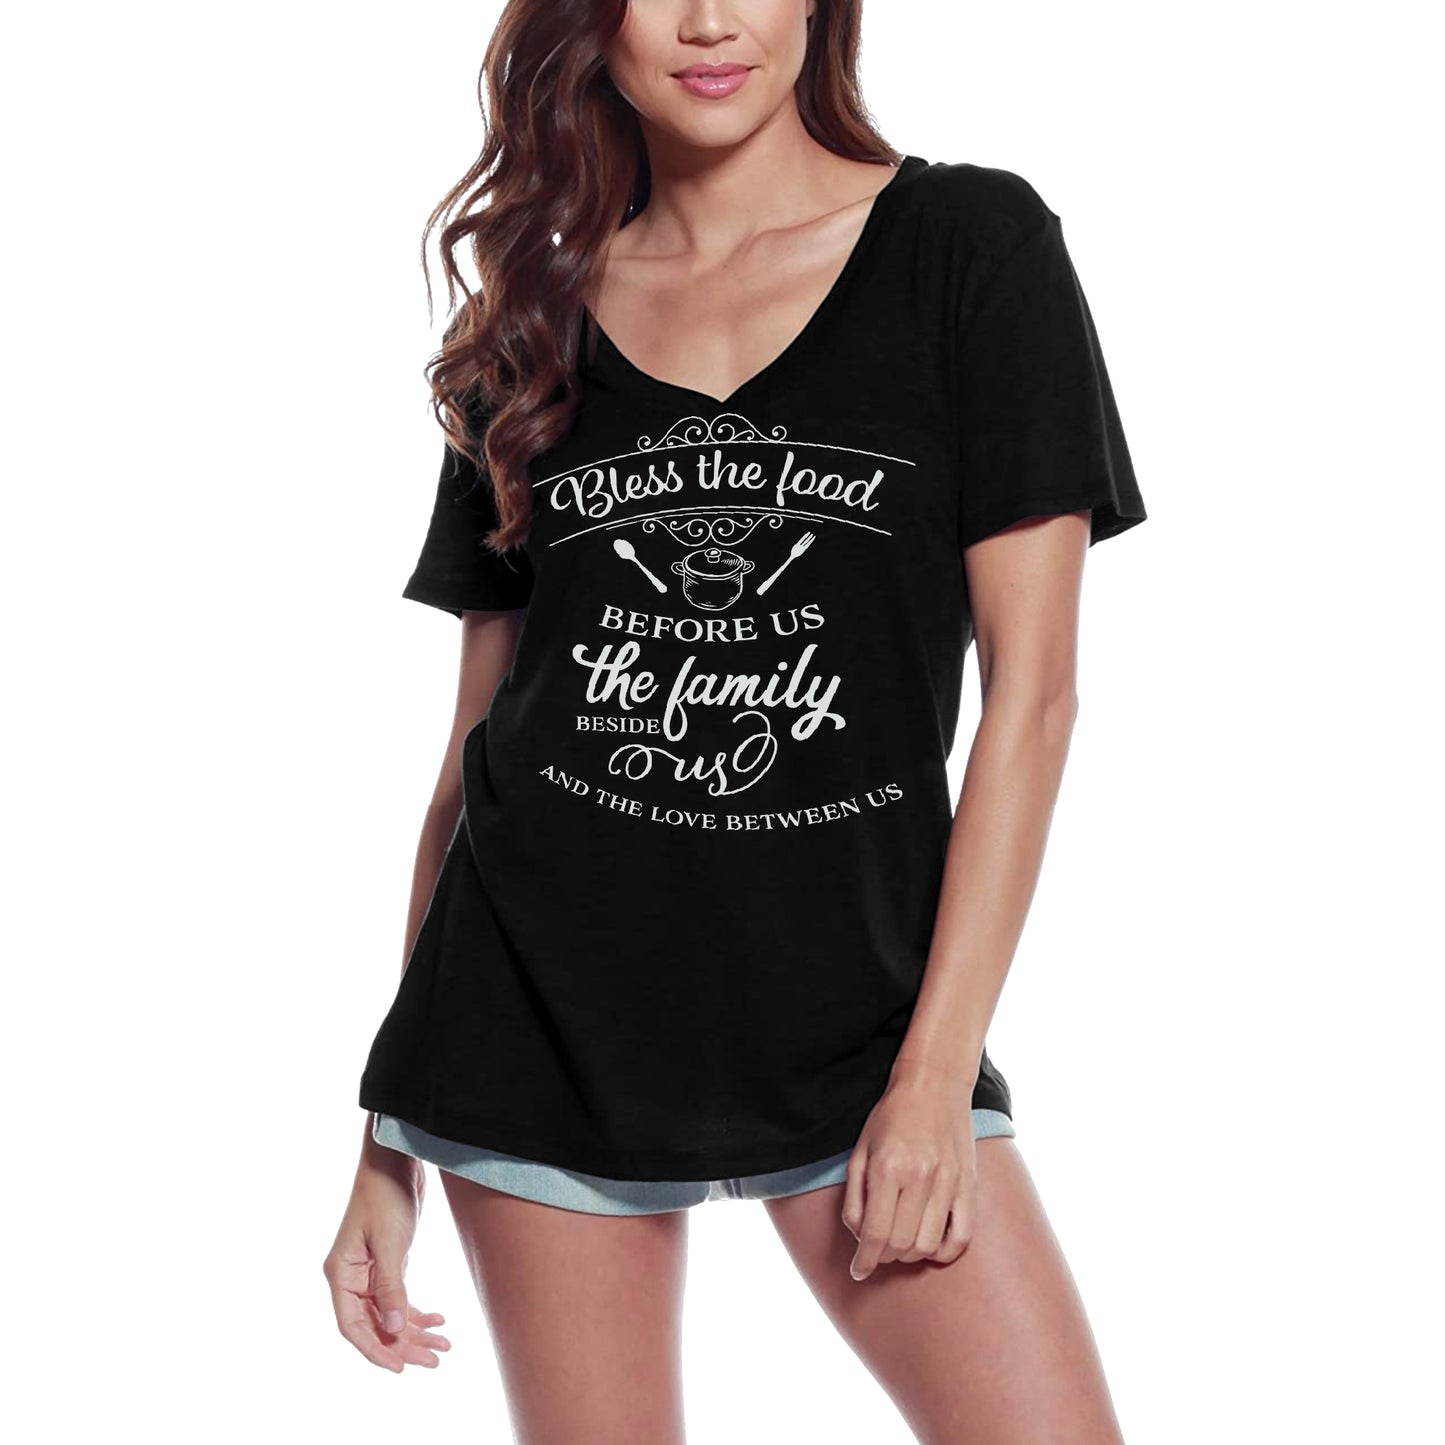 ULTRABASIC Women's T-Shirt Bless the Food - Short Sleeve Tee Shirt Tops